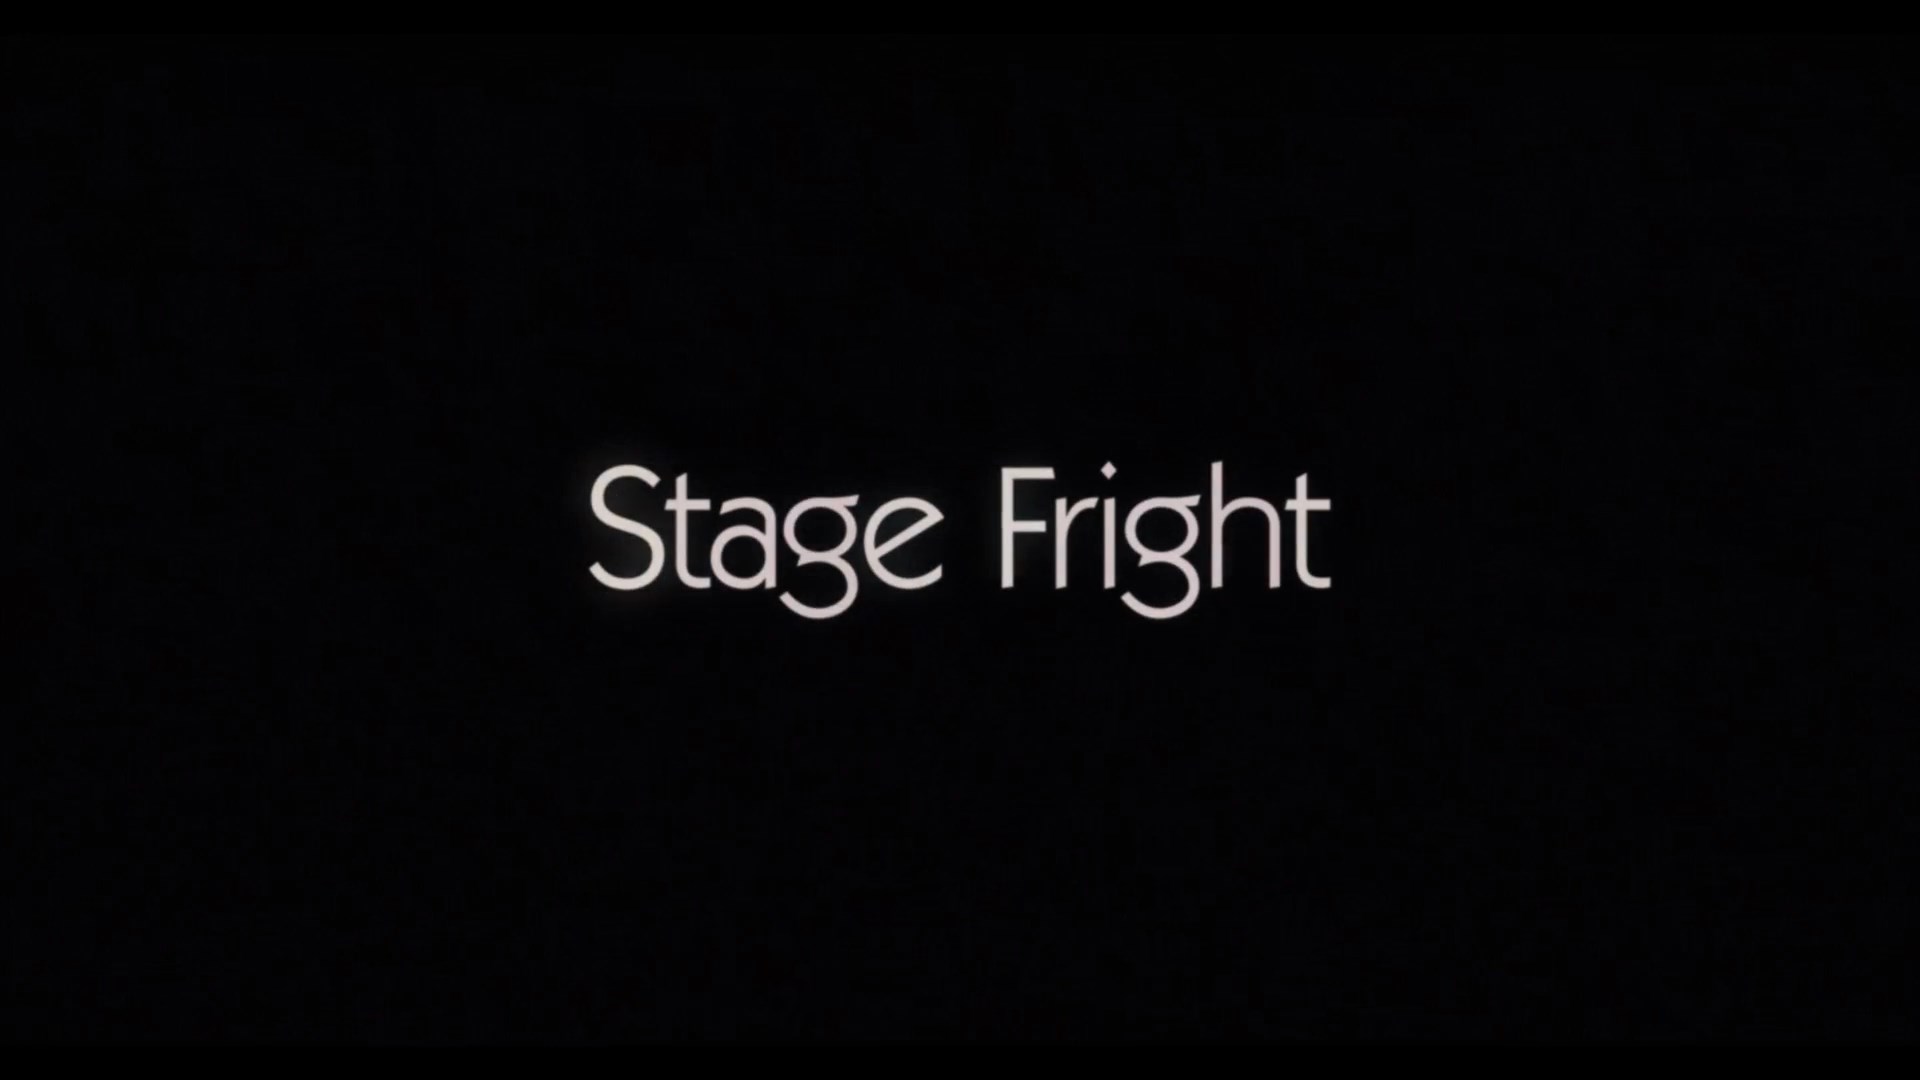 جيني سليت: رهبة الجمهور,Jenny Slate: Stage Fright,Jenny Slate: Stage Fright 2019,Jenny Slate: Stage Fright مترجم,Jenny Slate,جيني سليت,ستاند اب,ستاند اب كوميدي